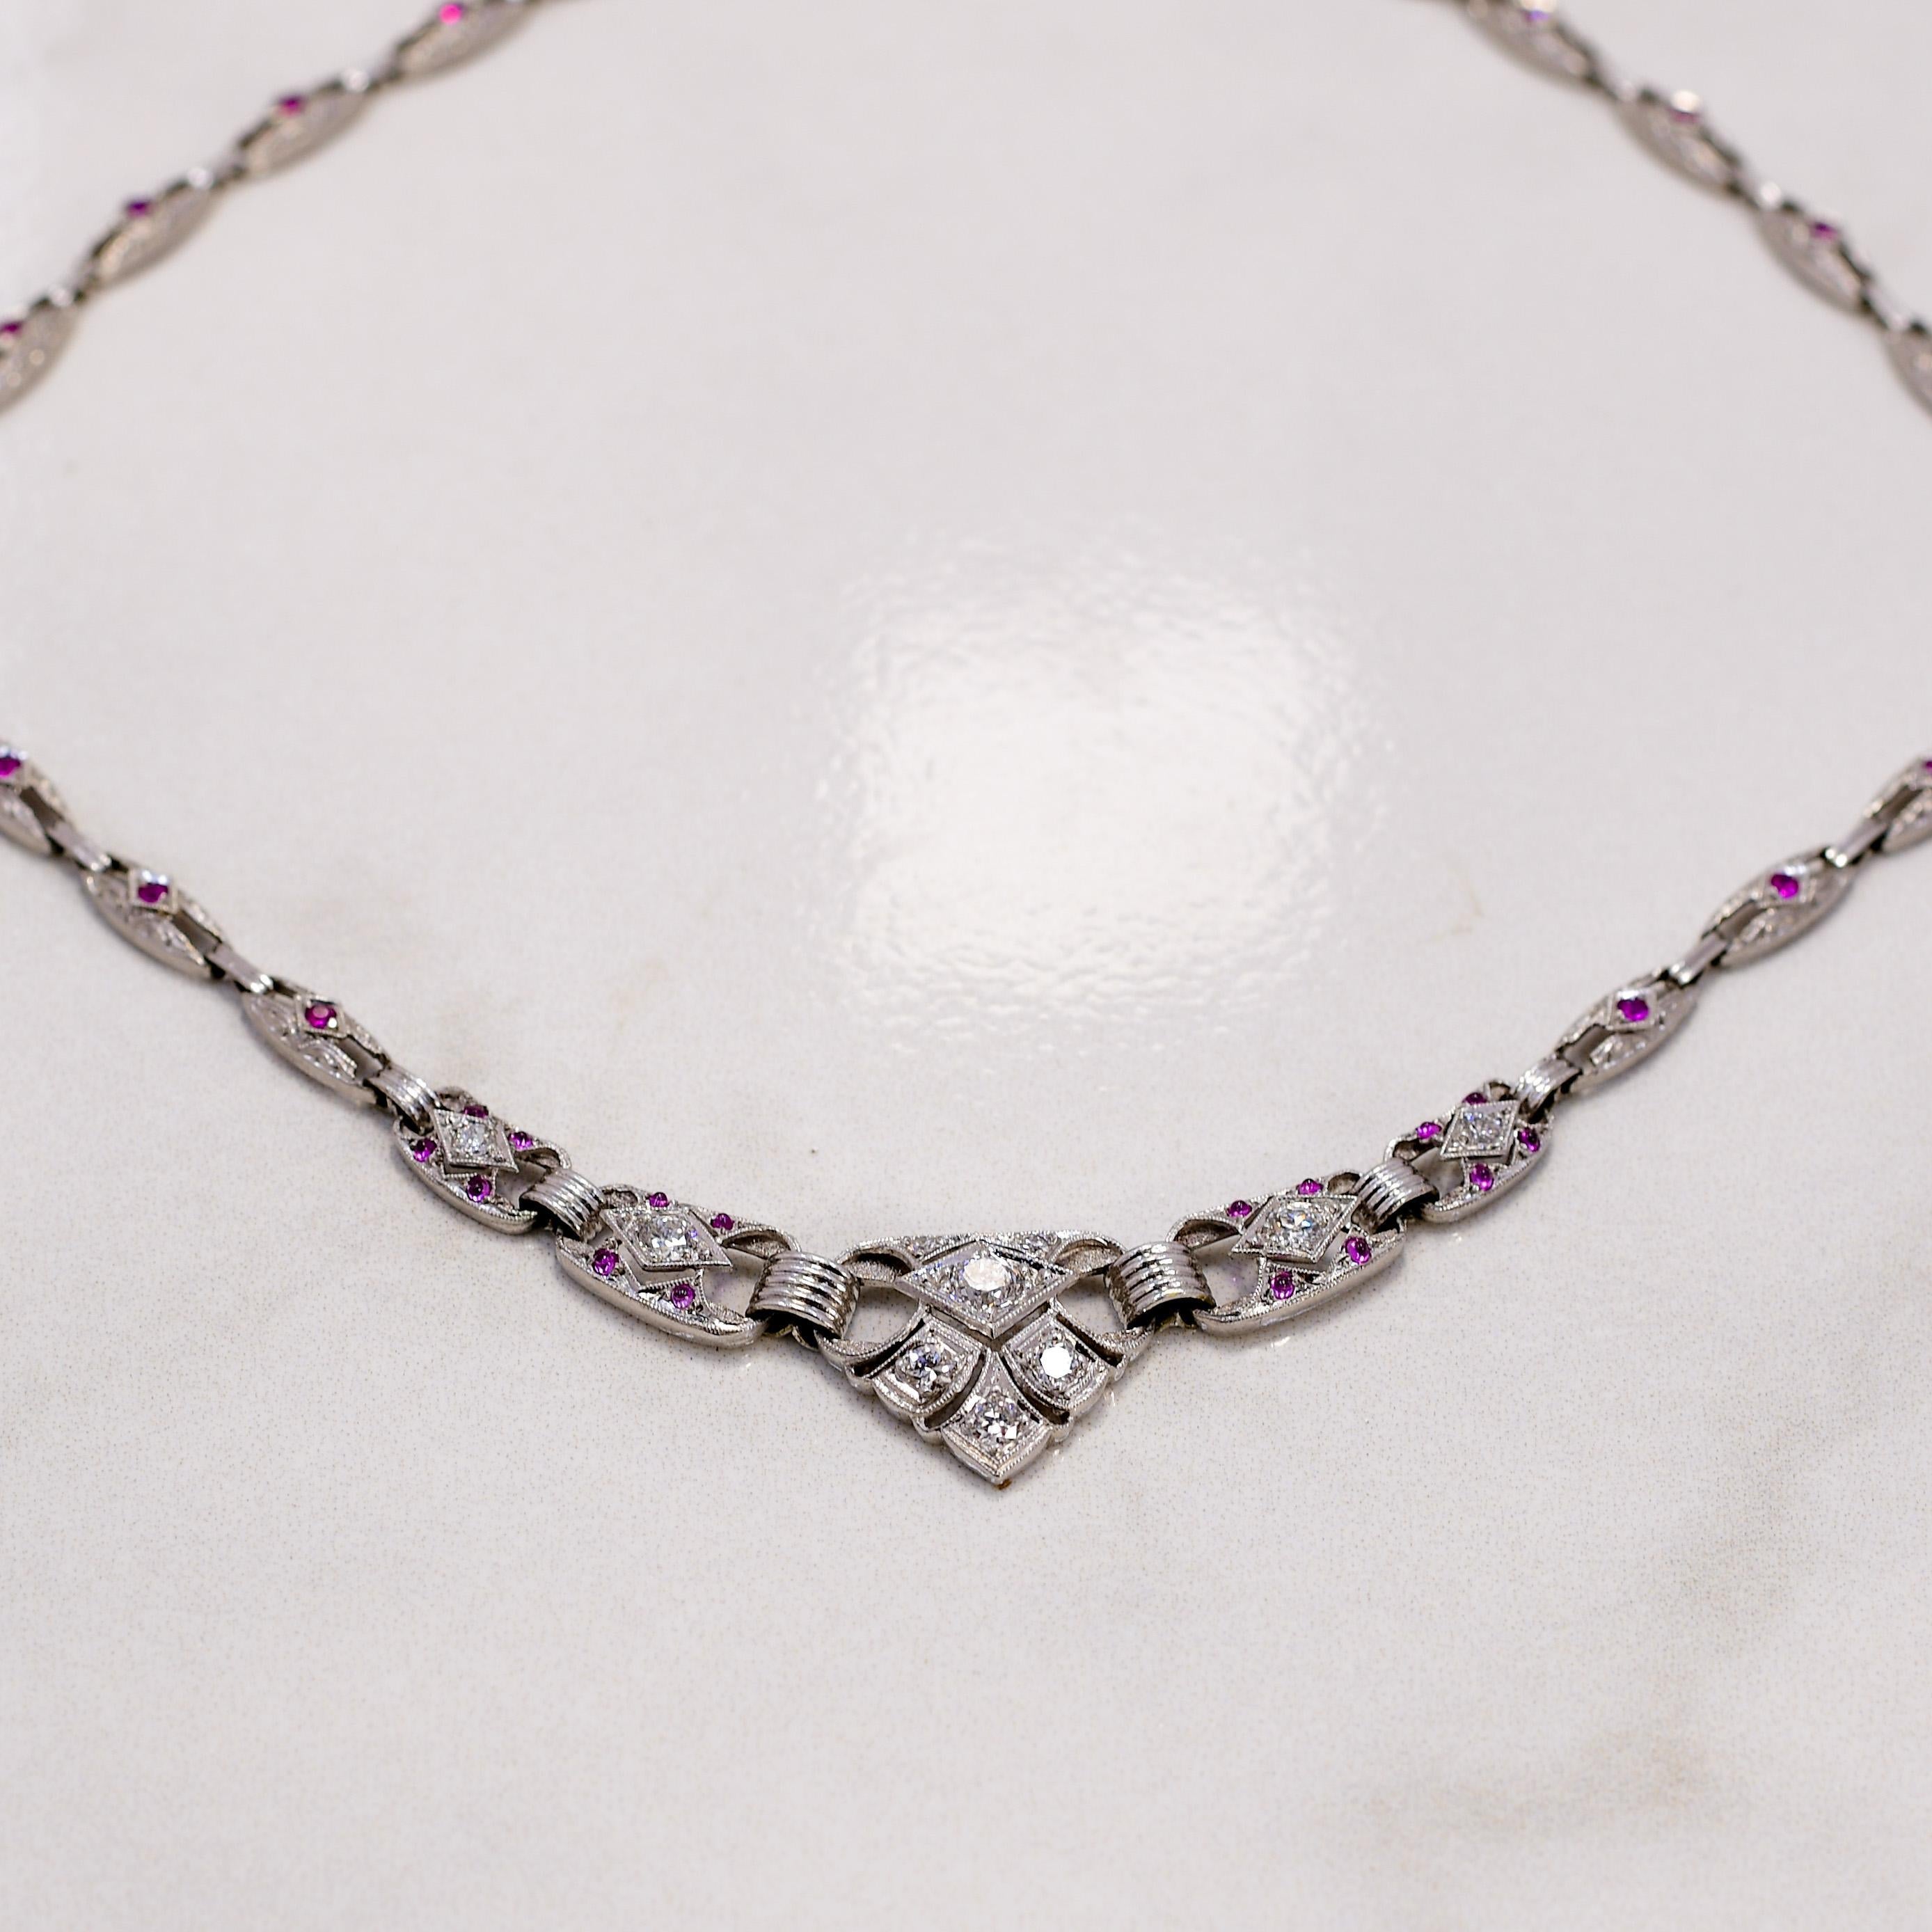 Die Art Deco 14K White Gold Diamond & Ruby Filigree Necklace ist eine atemberaubende Hommage an den Glamour und die Raffinesse der Roaring Twenties. Mit ihrem filigranen Design fängt diese Halskette die Essenz des Art-déco-Stils ein, der sich durch